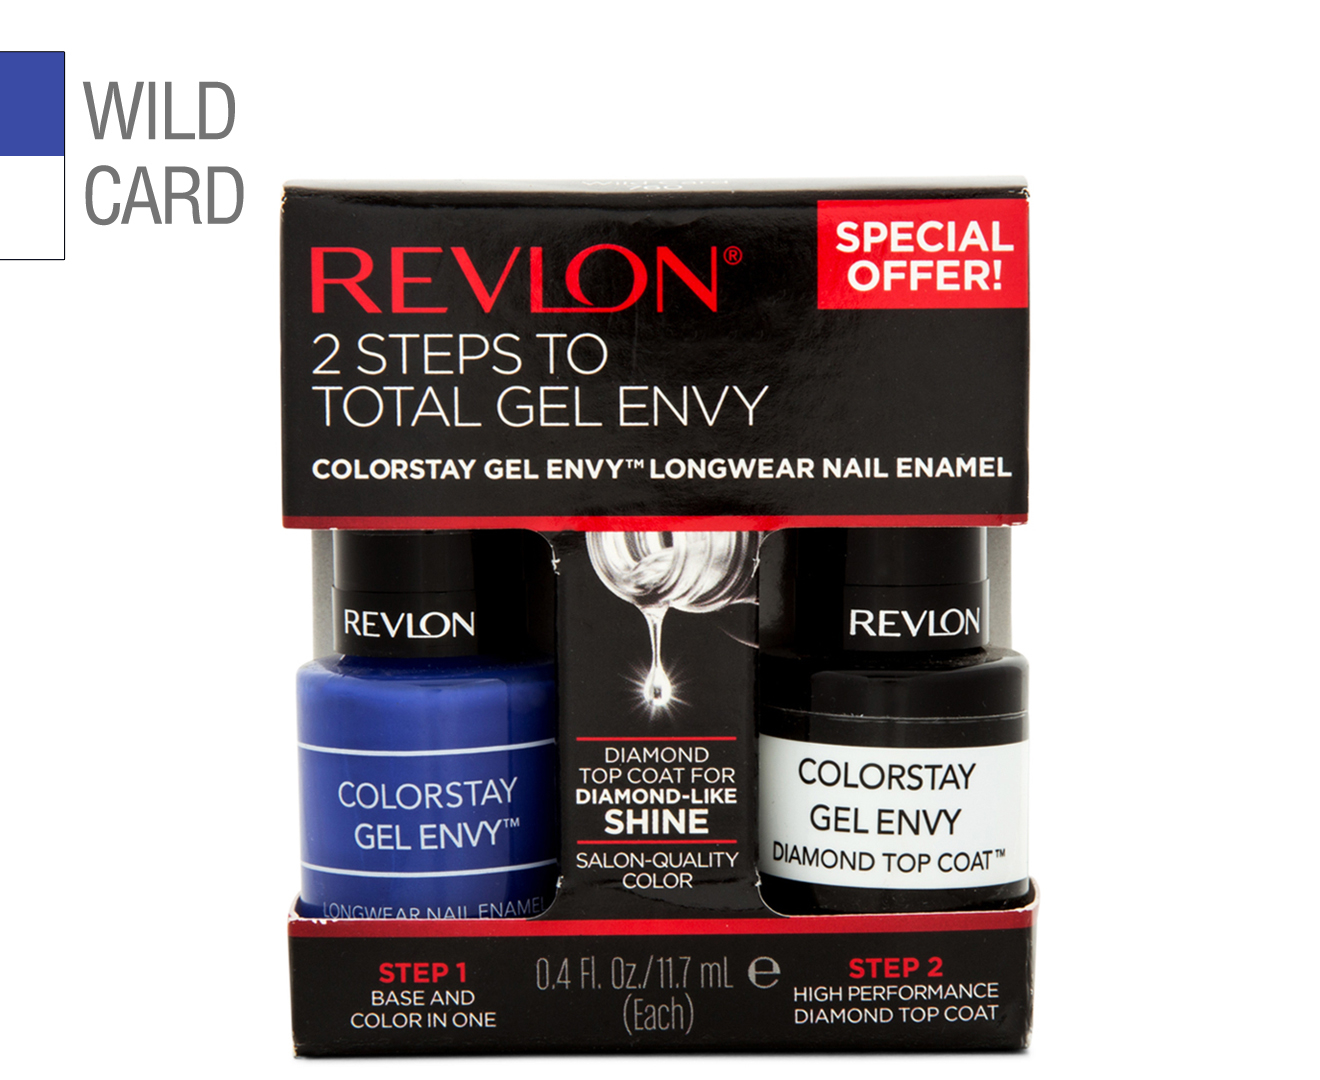 6. Revlon ColorStay Gel Envy in "Wild Card" - wide 7